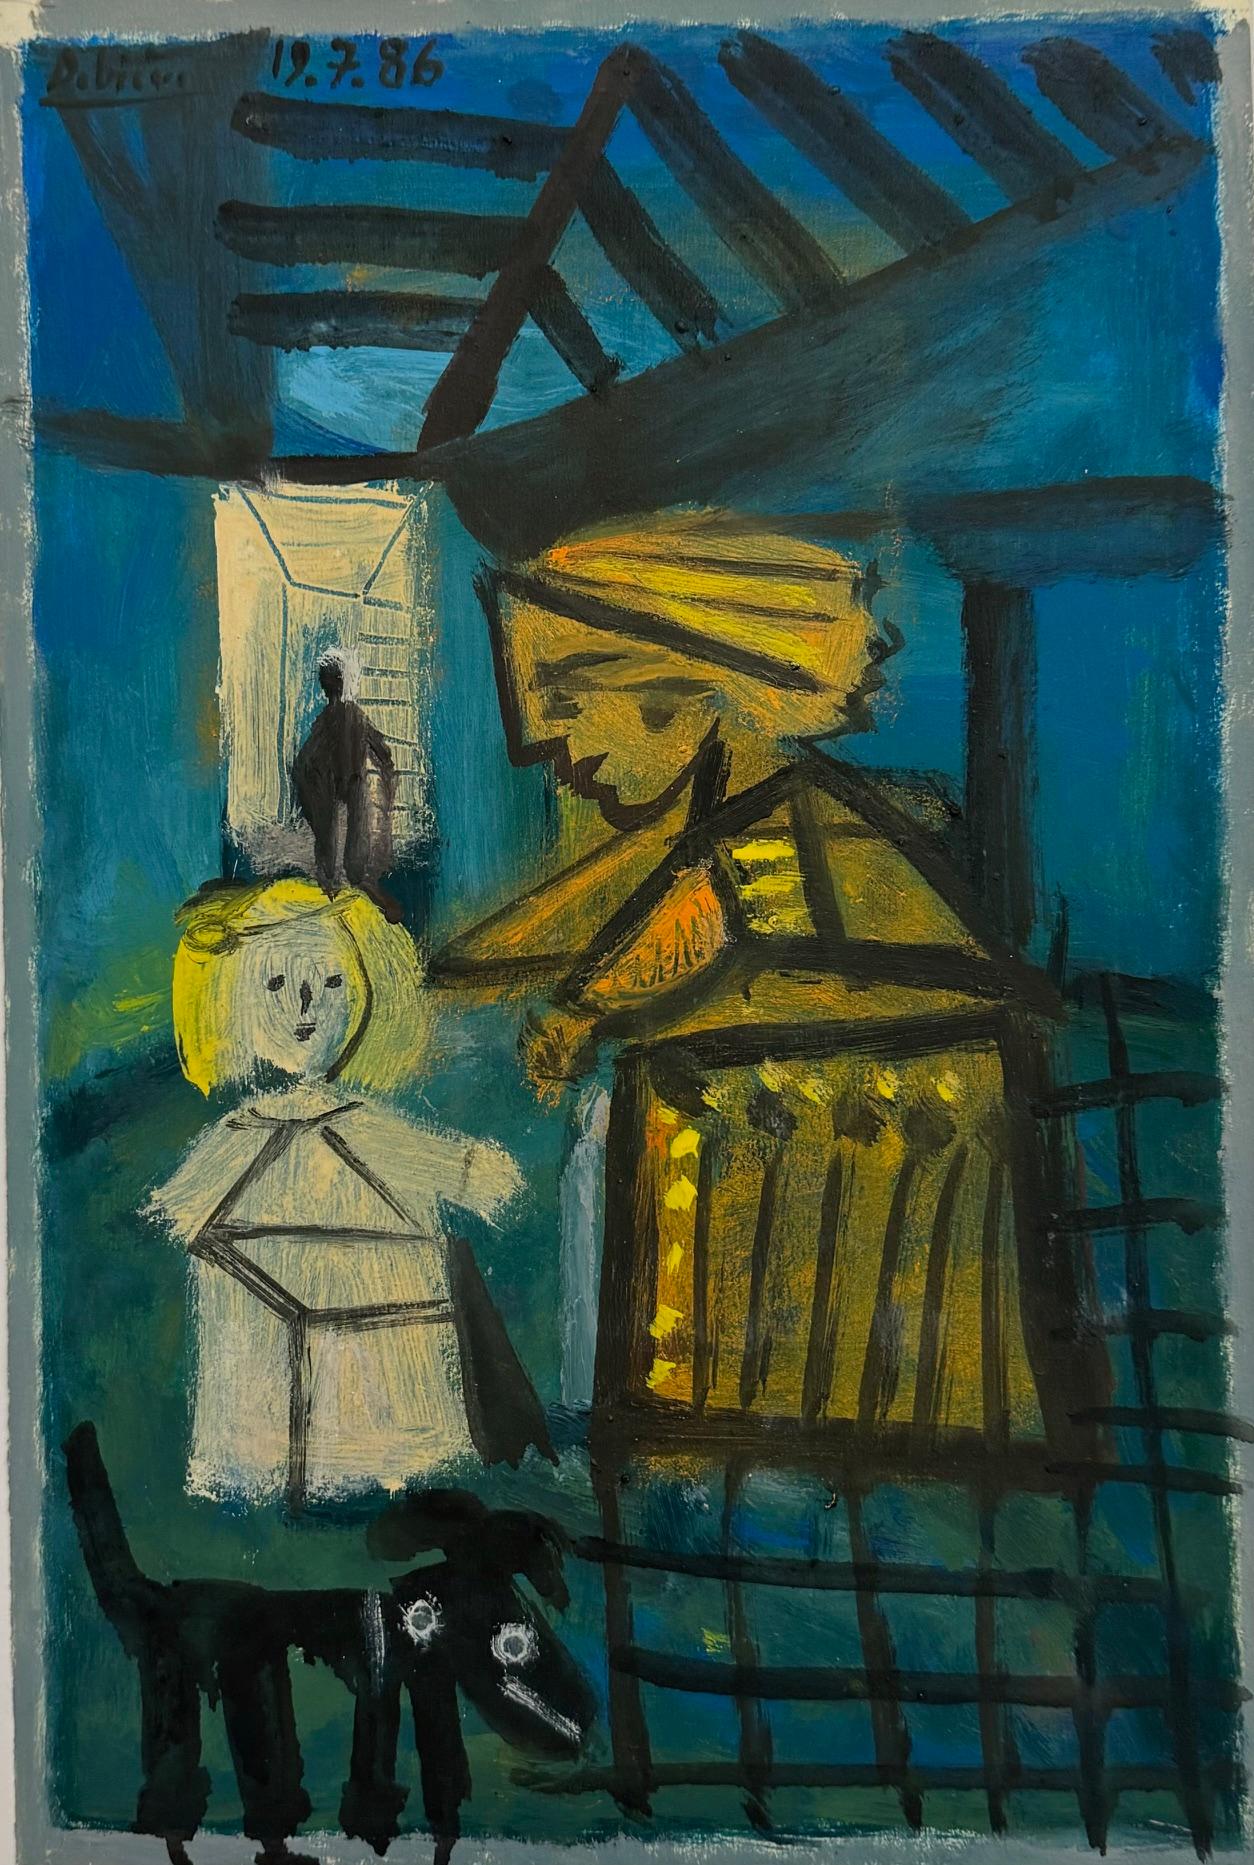 A Goodnight Hug de Raymond Debieve, peinture figurative cubiste française sur carton